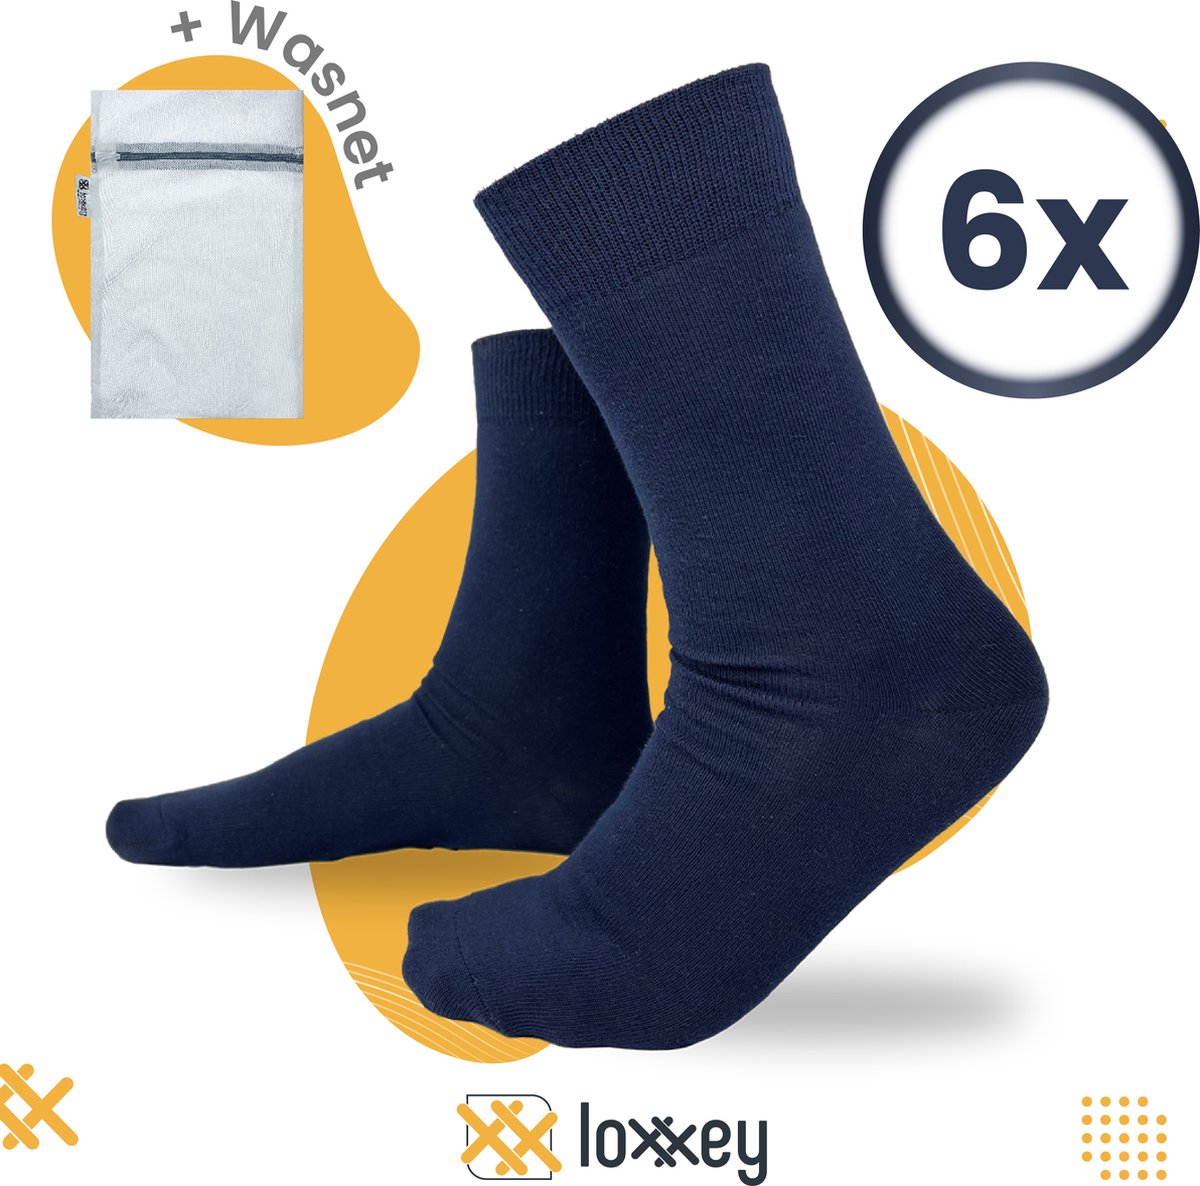 Loxxey® - Katoen - 6 Paar - Heren & Dames - Naadloos - Maat 39-42 - Donkerblauw + Wasnet 33x22cm